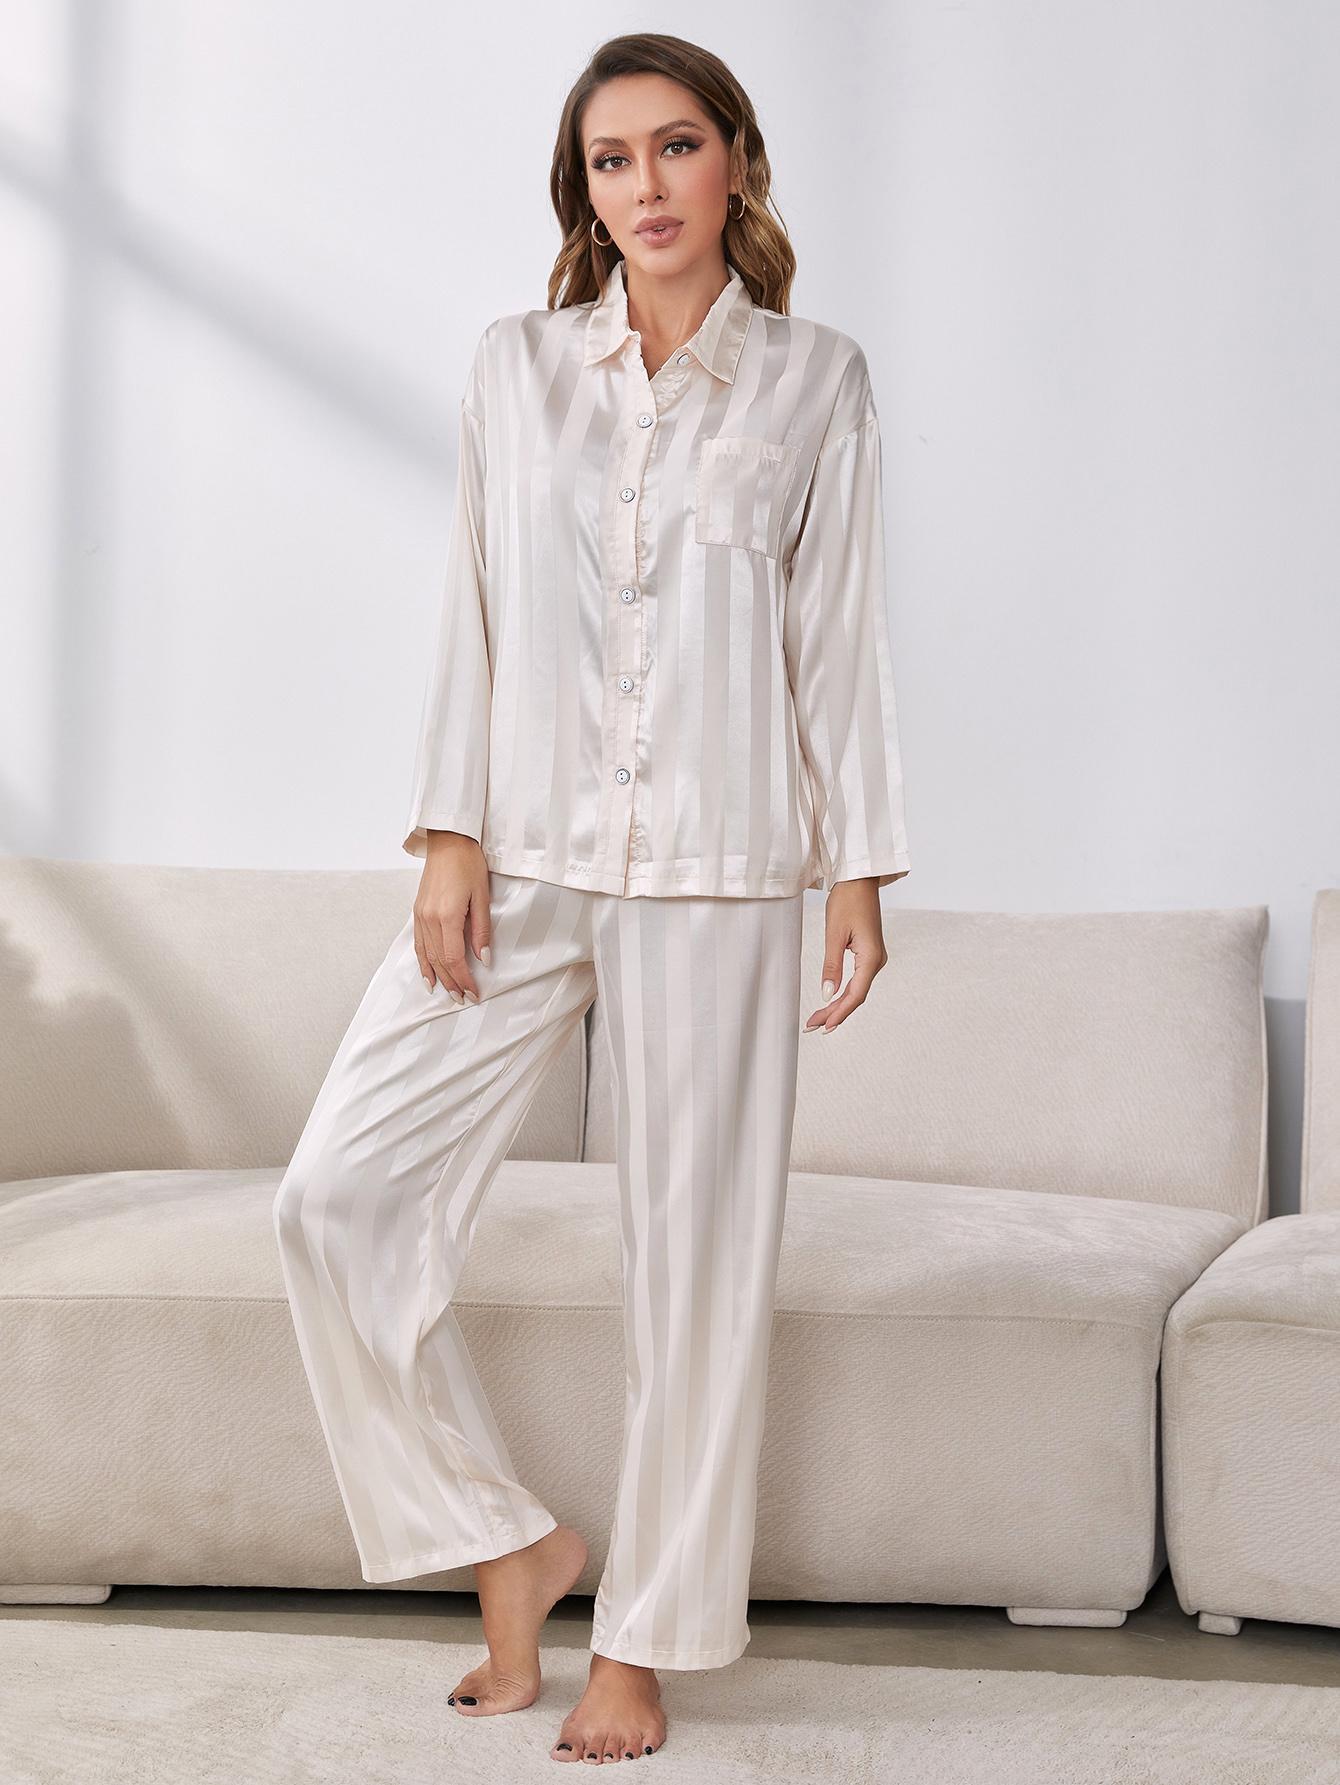 Button-Up Shirt and Pants Pajama Set - DromedarShop.com Online Boutique